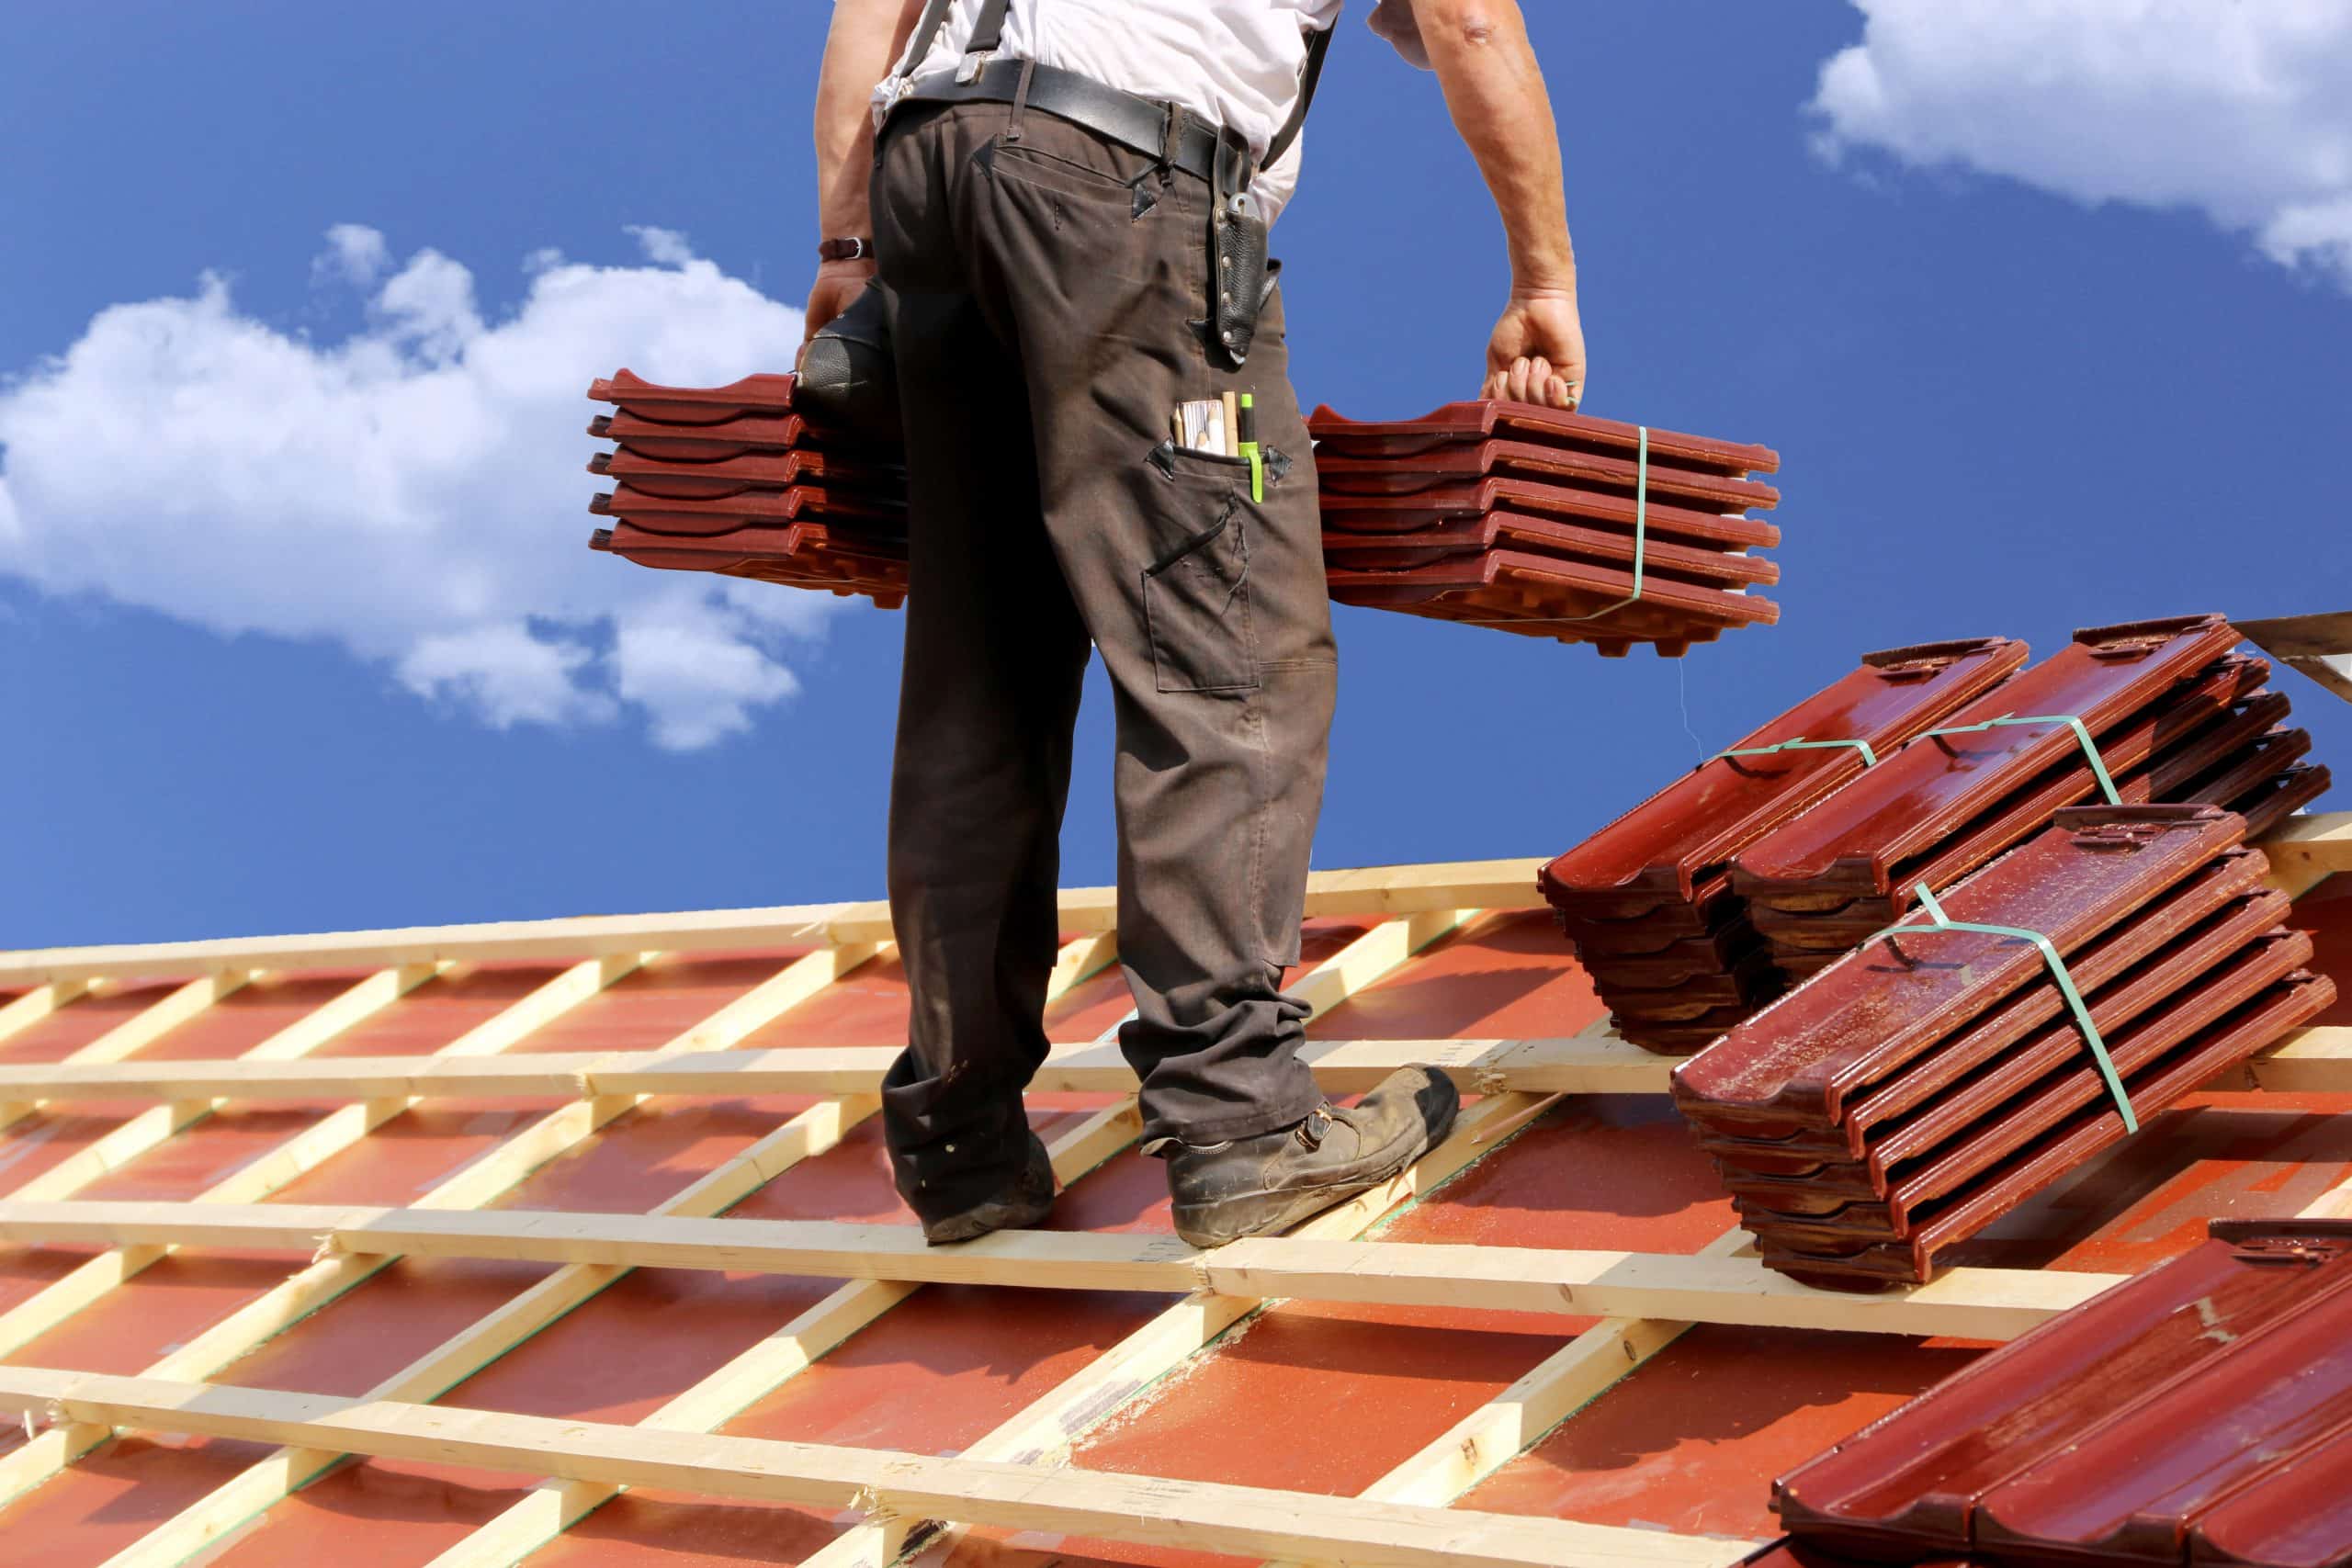 Protégez et embellissez votre toiture grâce aux artisans couvreurs